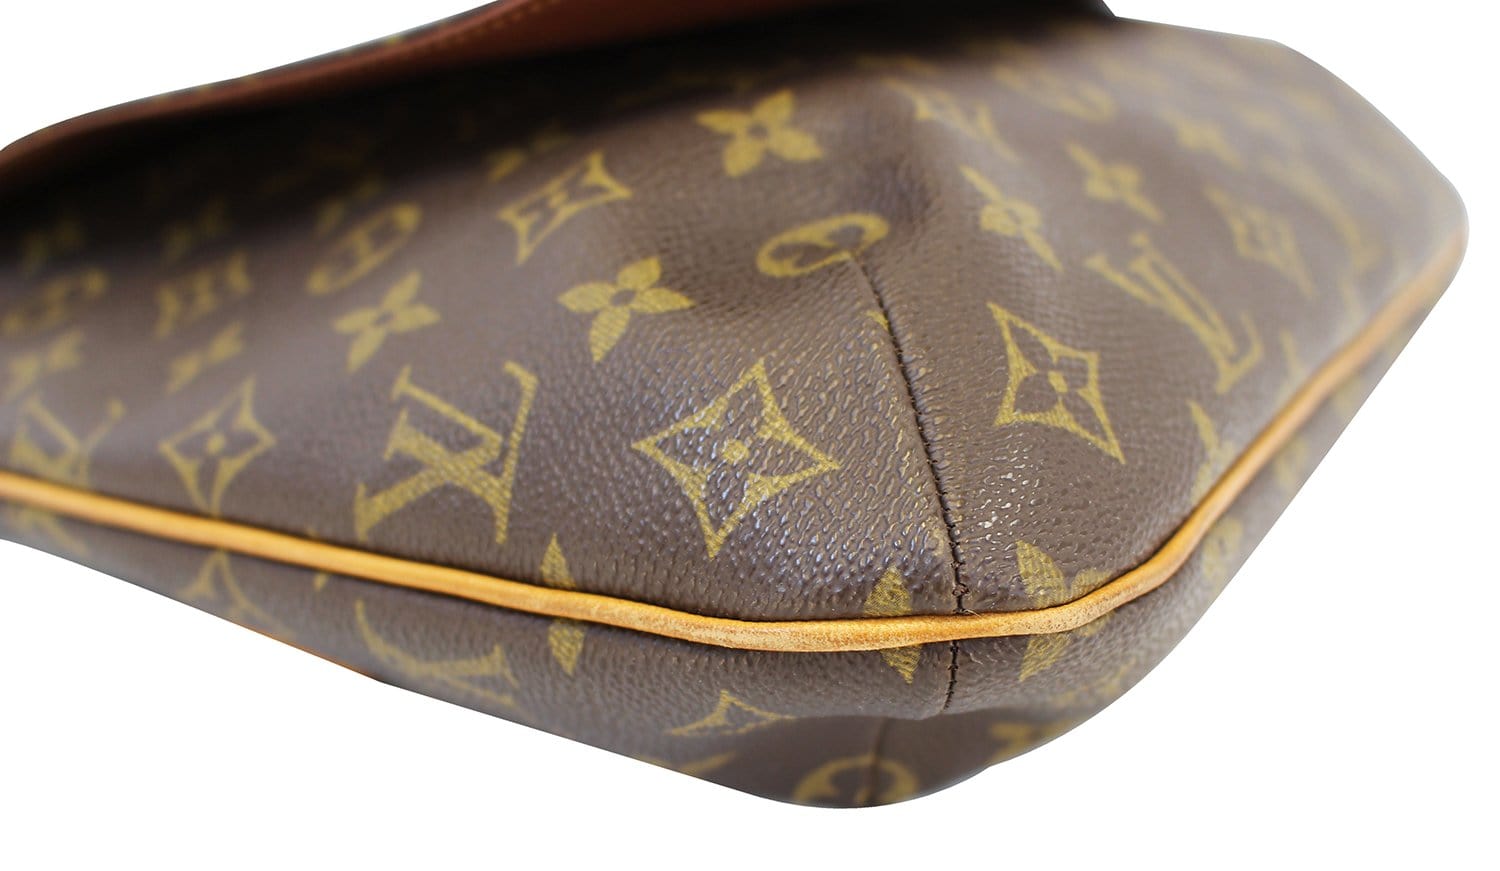 Auth Louis Vuitton Monogram Musette Shoulder bag 0i030060n